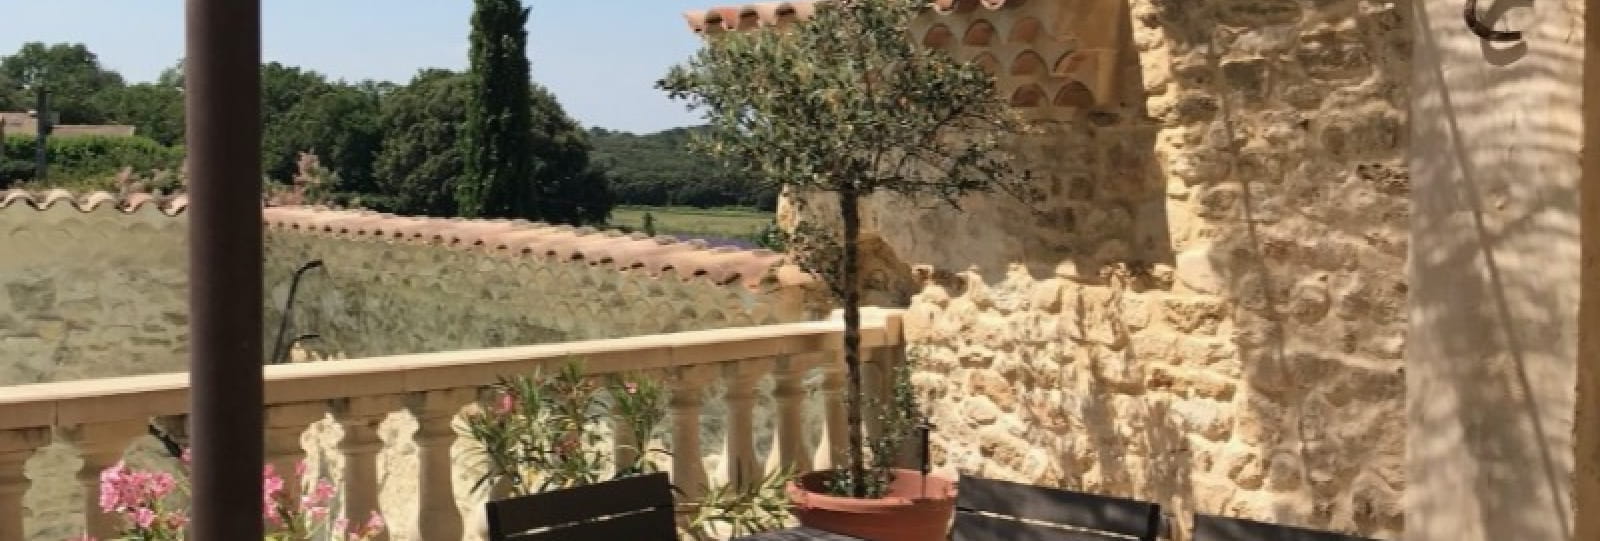 La Résidence des arÔmes - Gîte Mimosa en Drôme Provençale